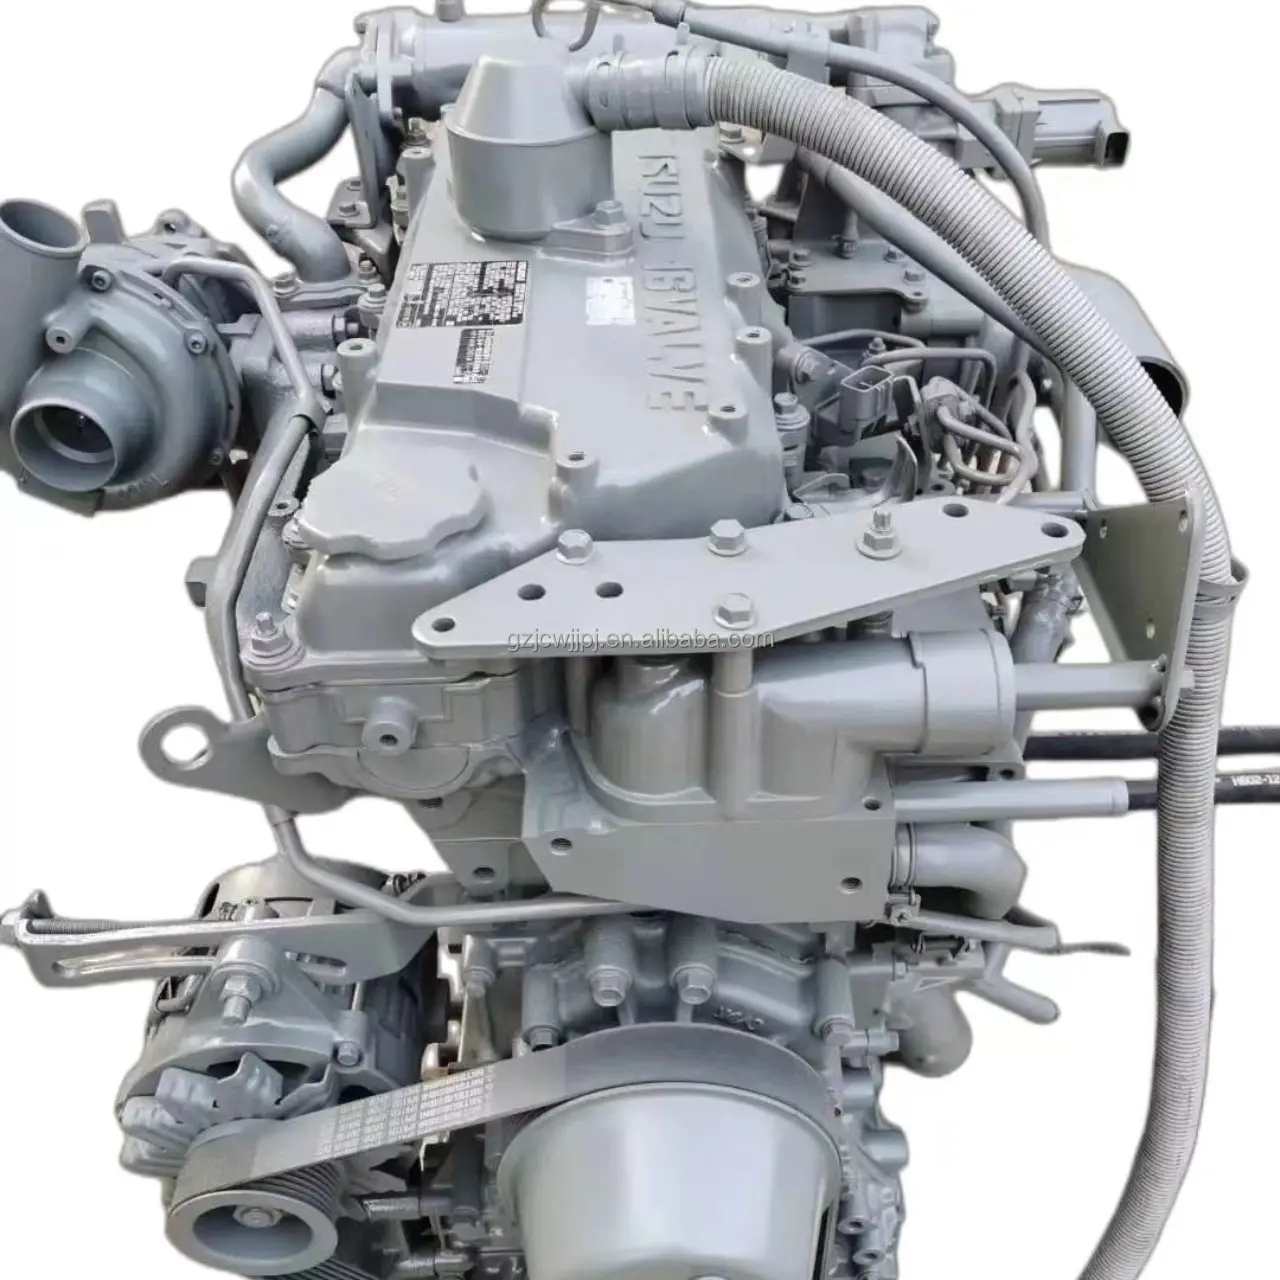 JC yeniden üretilmiş 6UZ1 motor tamamen yeni gerçek ekskavatör 6WG1 6BG1 6BG1T 6UZ1 dizel motor isuzu 6uz1 motor